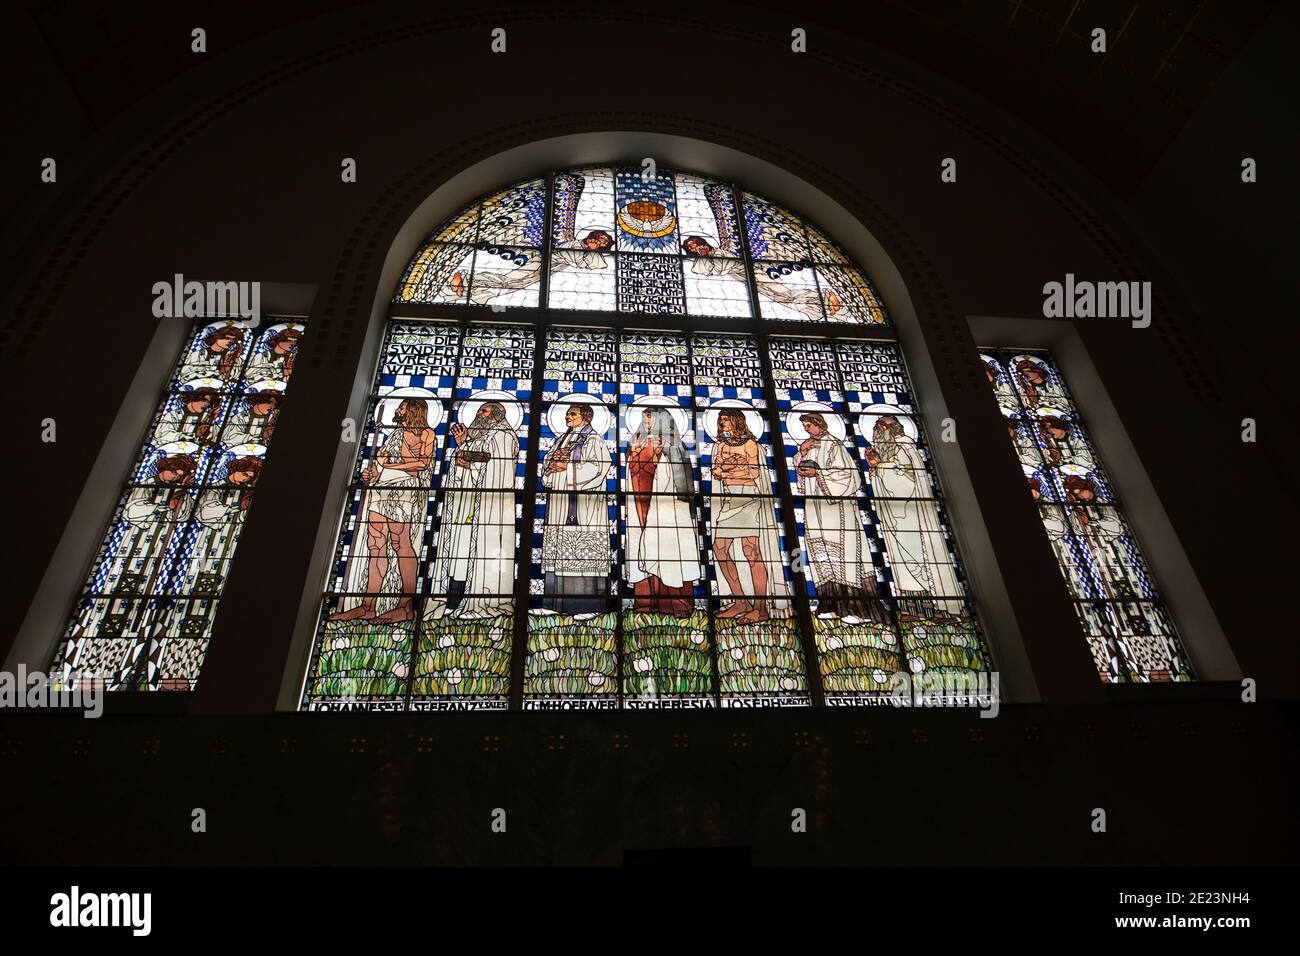 Le vitrail art nouveau de Koloman Moser dans l'église Steinhof de St Leopold à Penzing, Vienne, Autriche. Banque D'Images